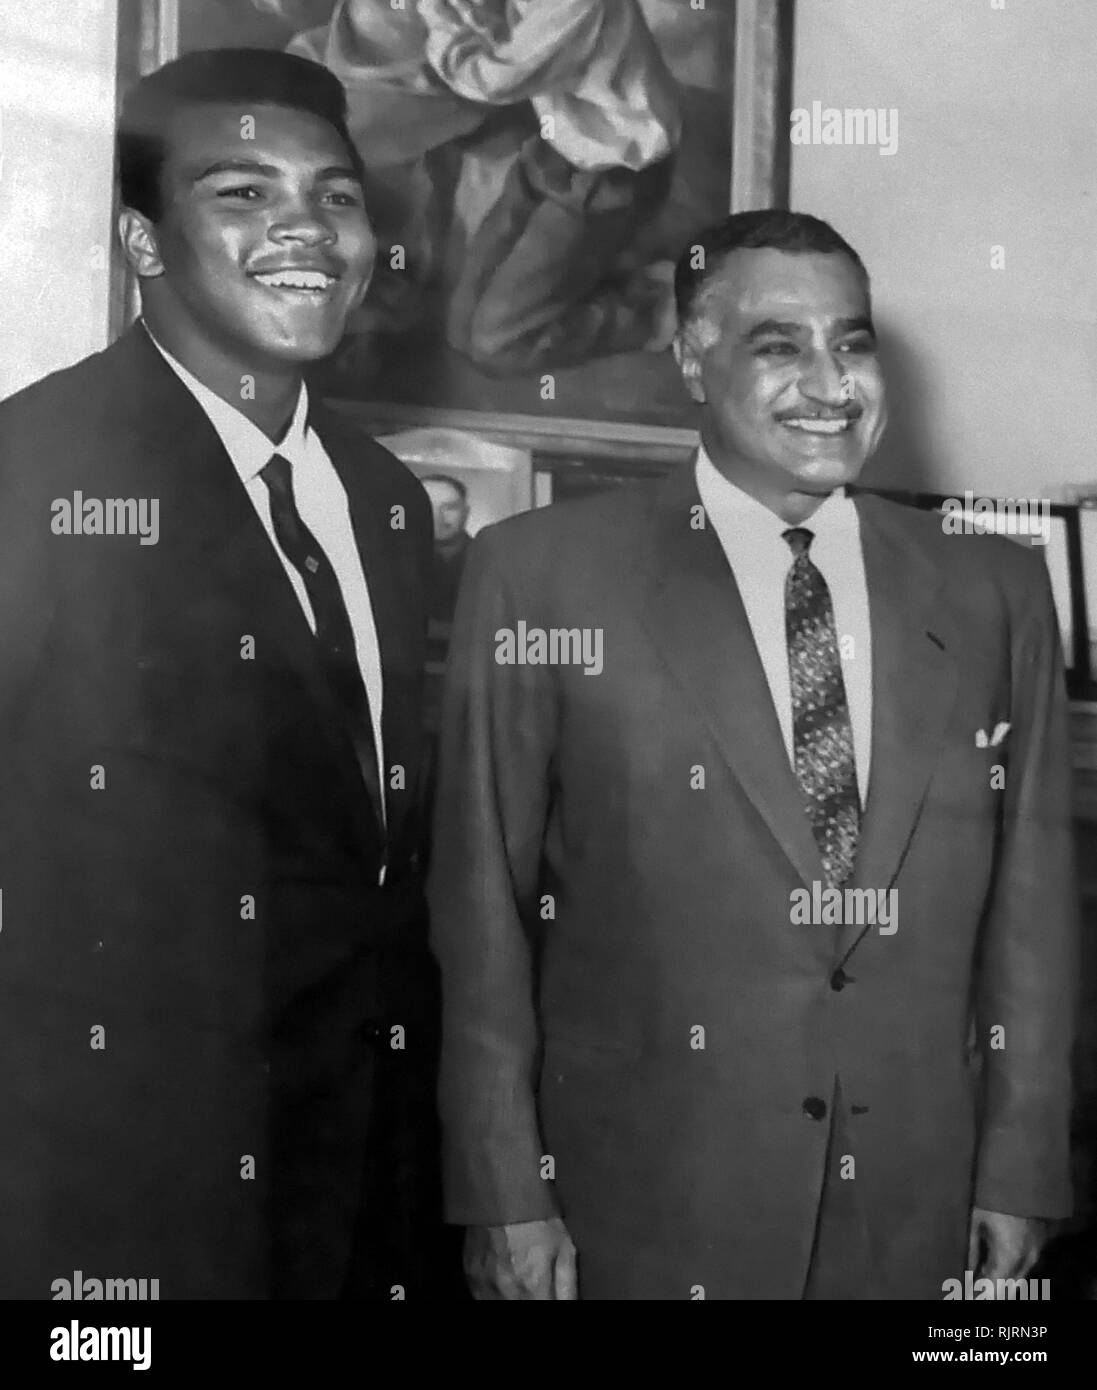 Muhammad Ali rencontre le président Nasser d'Égypte, 1964. Muhammad Ali,(1942 - 2016). Ali est un boxeur américain et militant ; il est généralement considéré comme l'un des plus importants et les plus célèbres personnalités sportives du 20e siècle. Banque D'Images